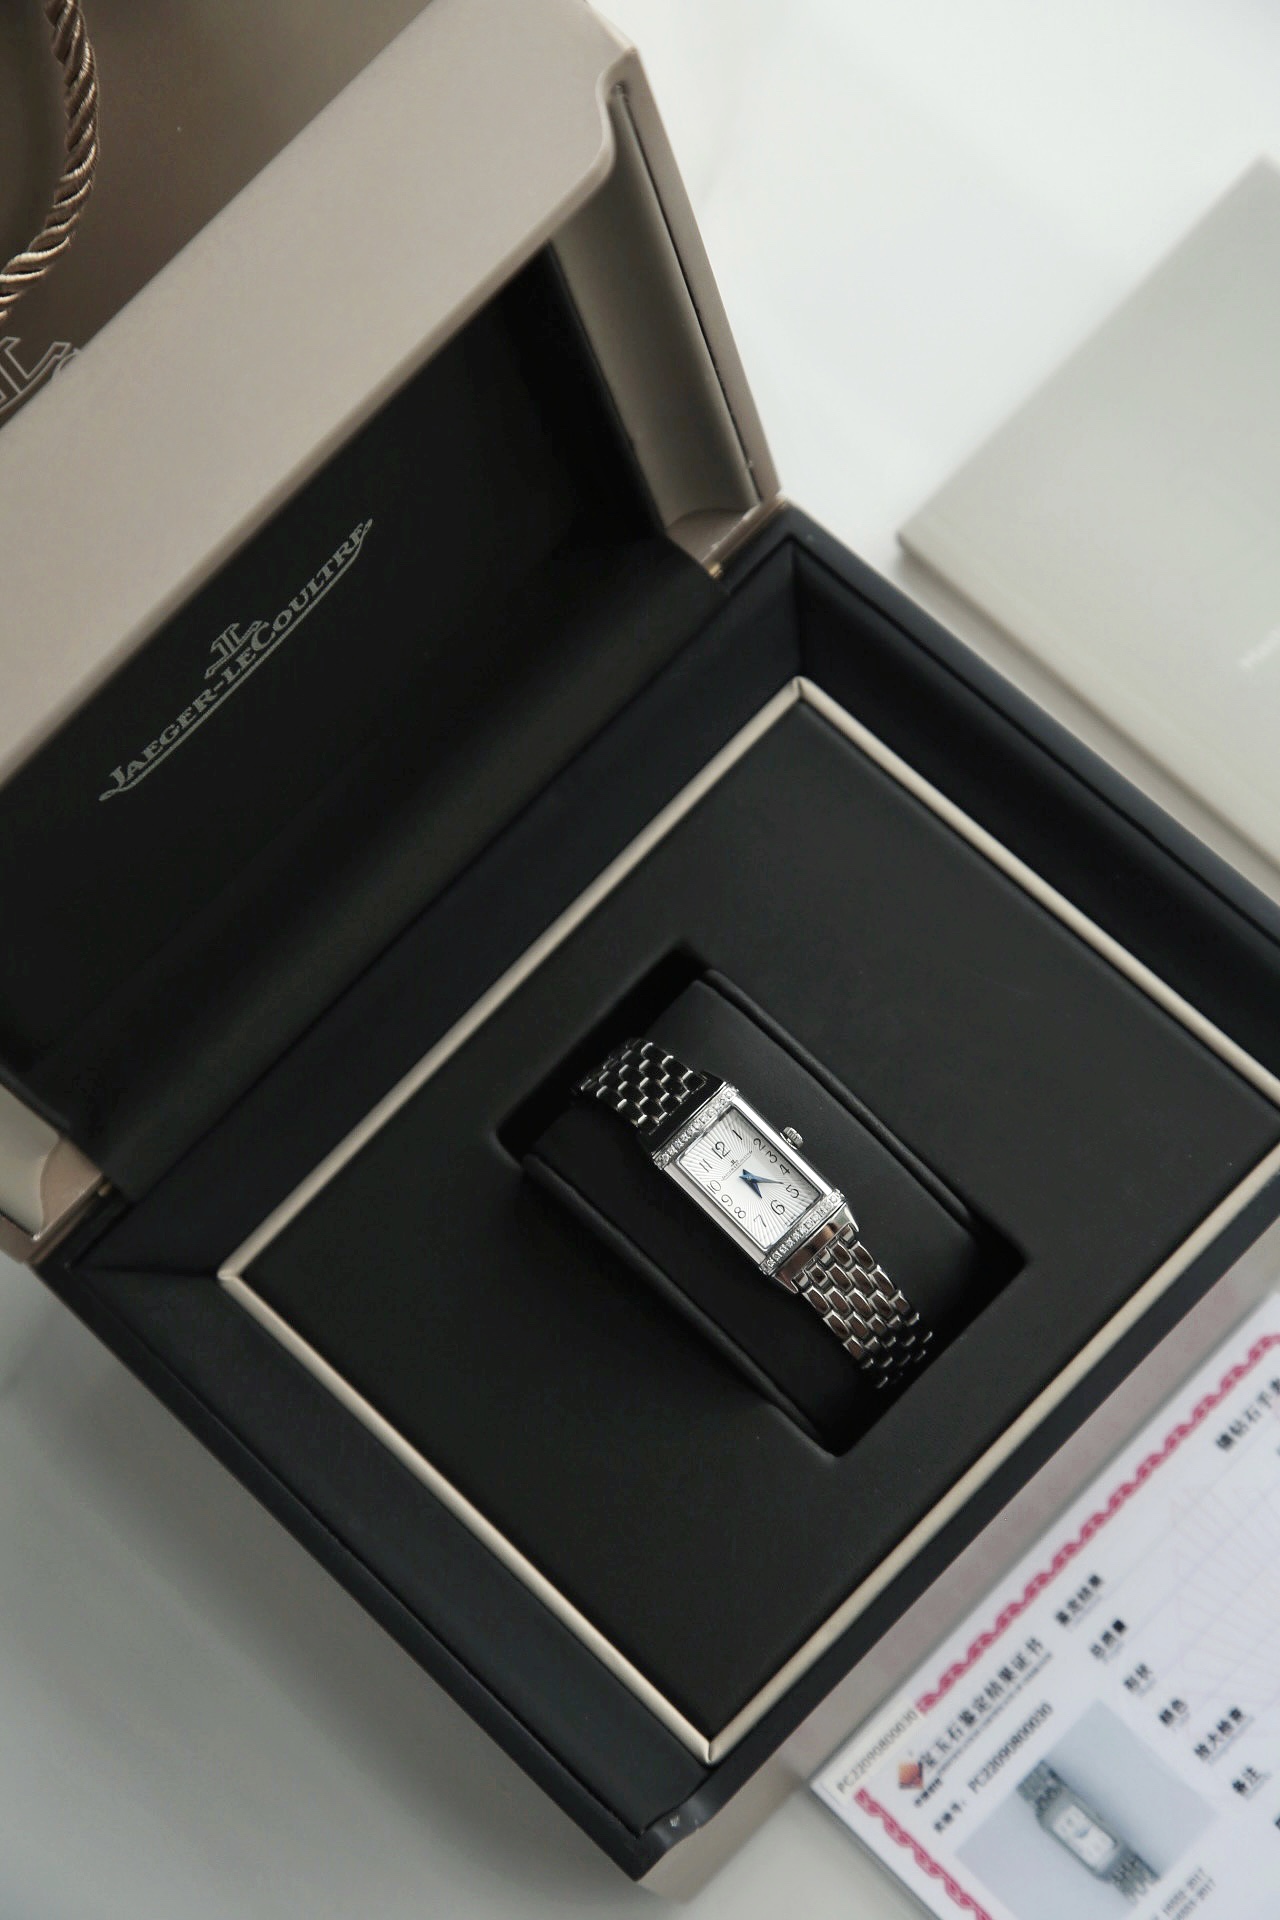 Jaeger-LeCoultre Watch Set With Diamonds Women Fashion Quartz Movement